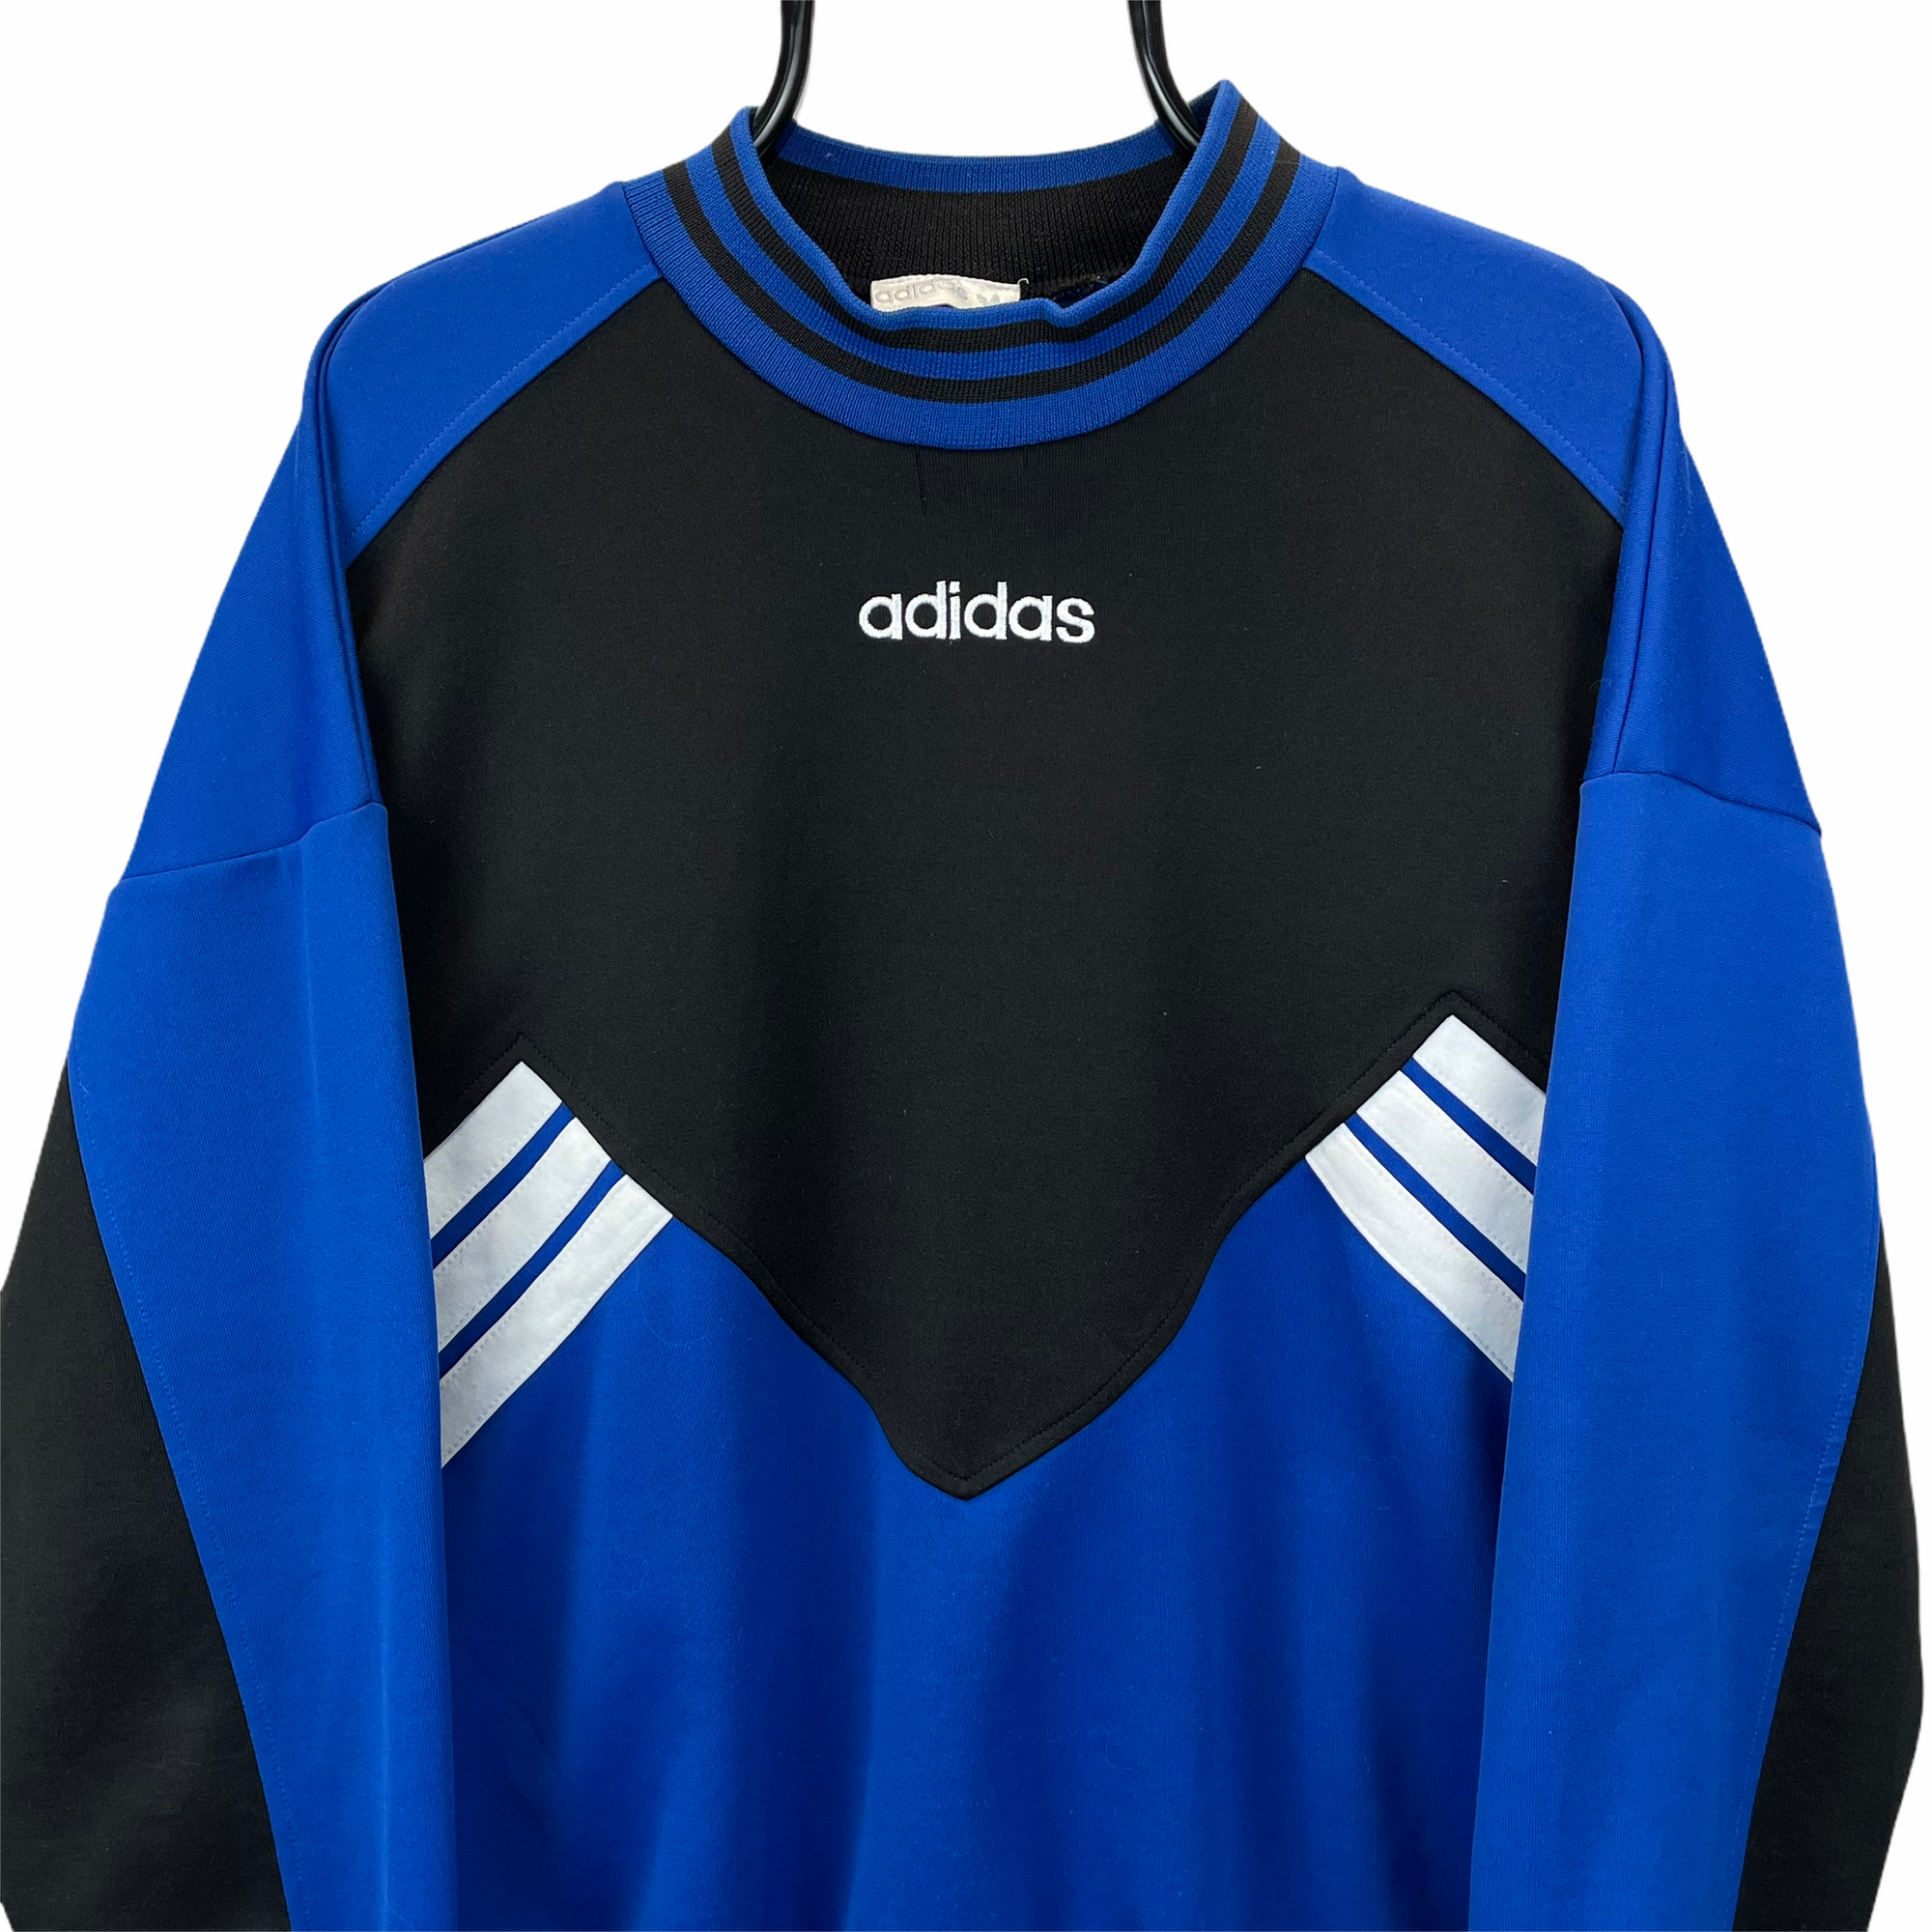 Vintage 80s Adidas Centre Spellout Sweatshirt in Black, Blue & White - Men's Large/Women's XL